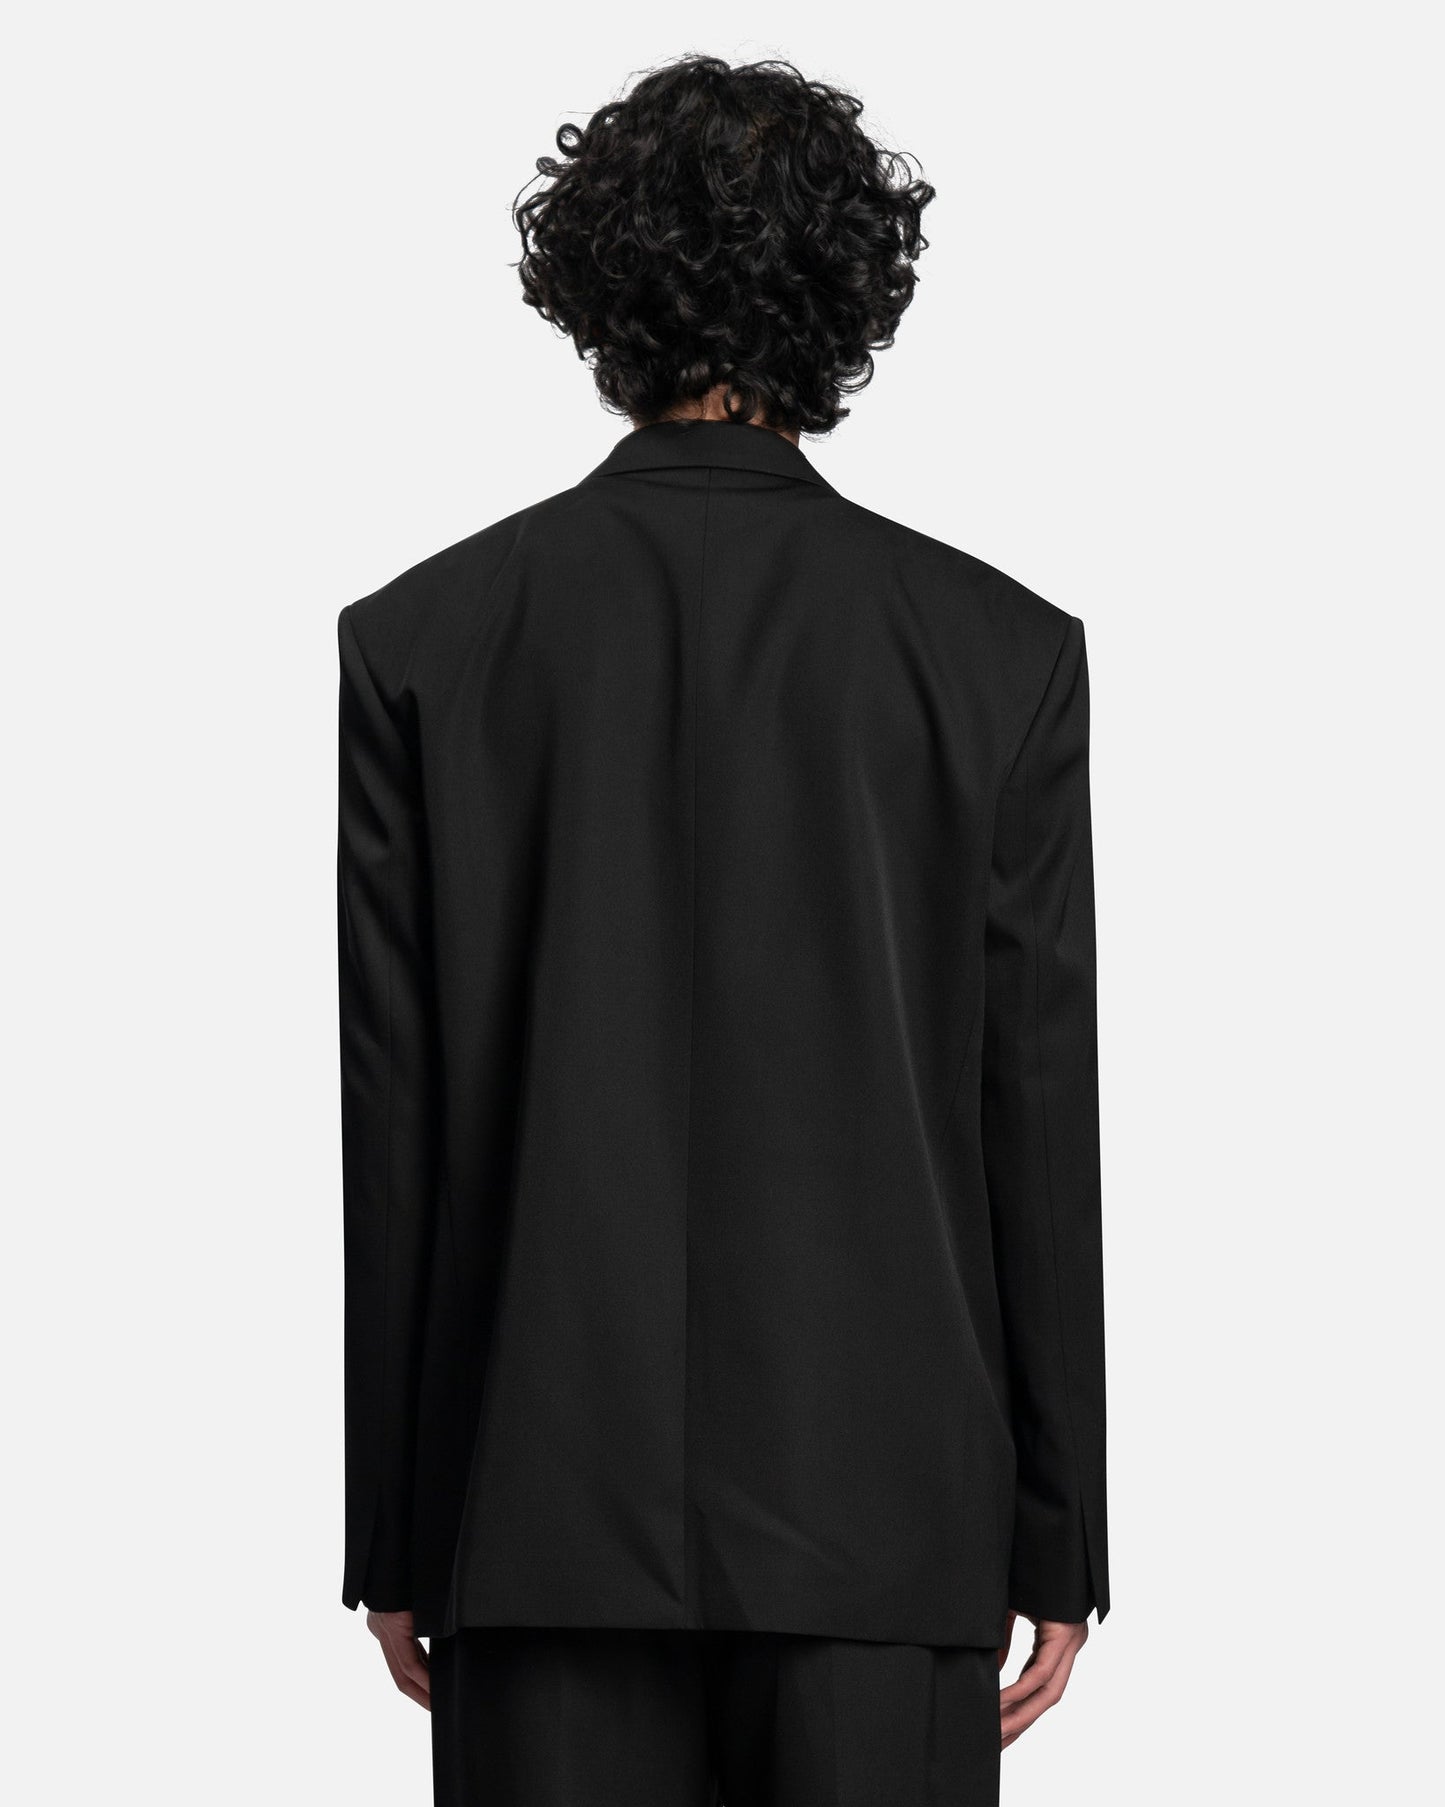 Juun.J Men's Jackets Front Zipper Two Button Single Jacket in Black